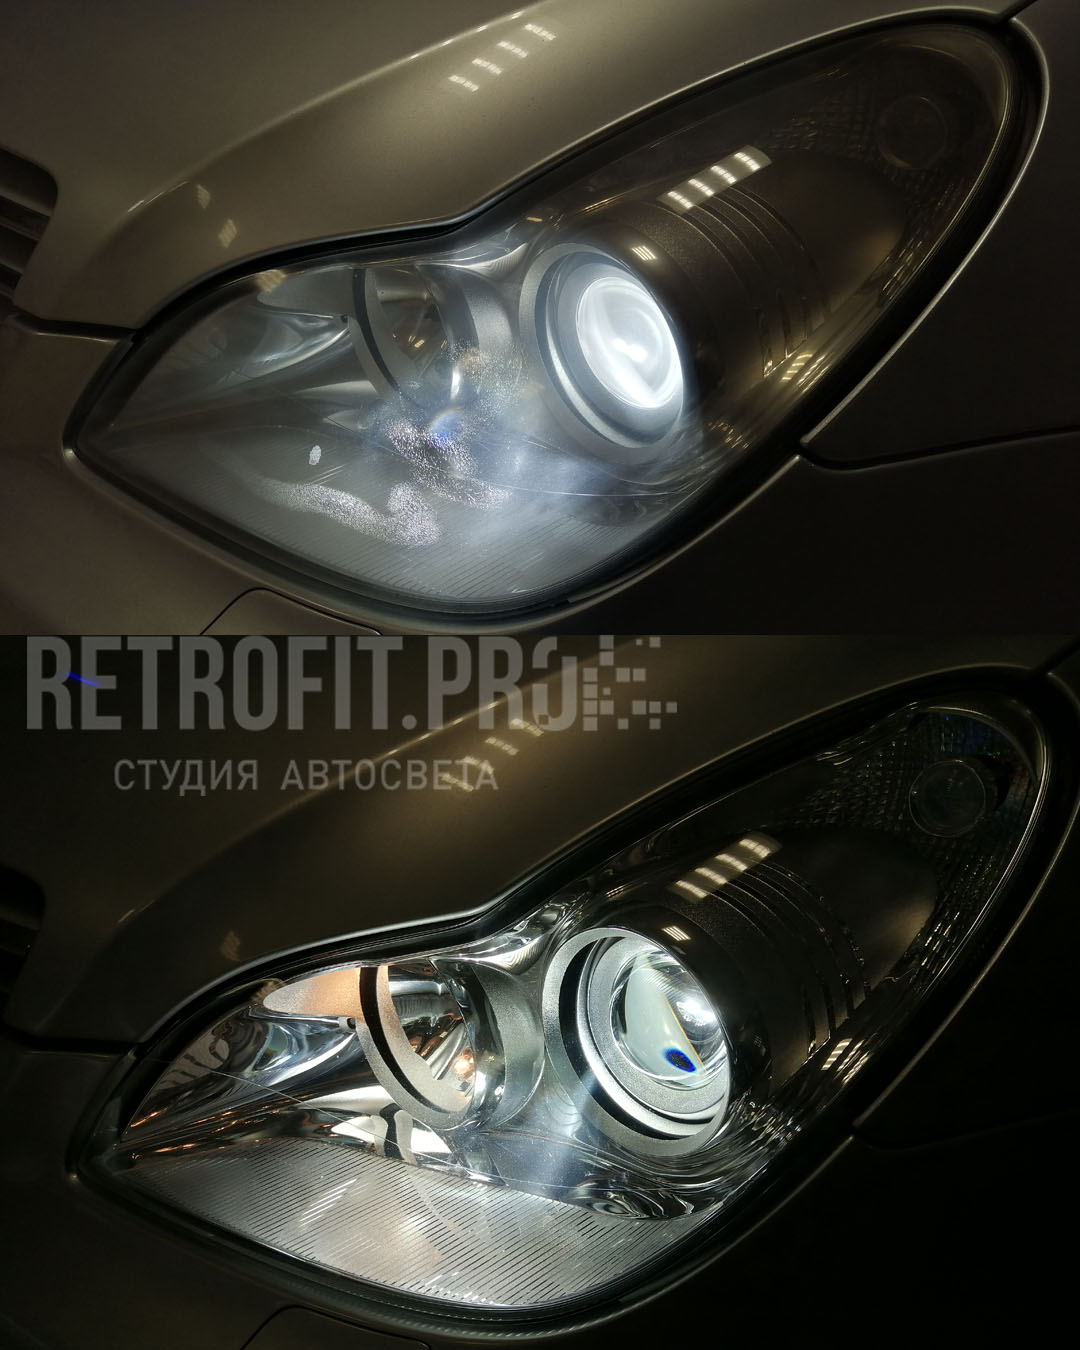 Mercedes-Benz CLS I (C219) (2004-2010) - Глубокая полировка, бронирование, замена линз + ламп